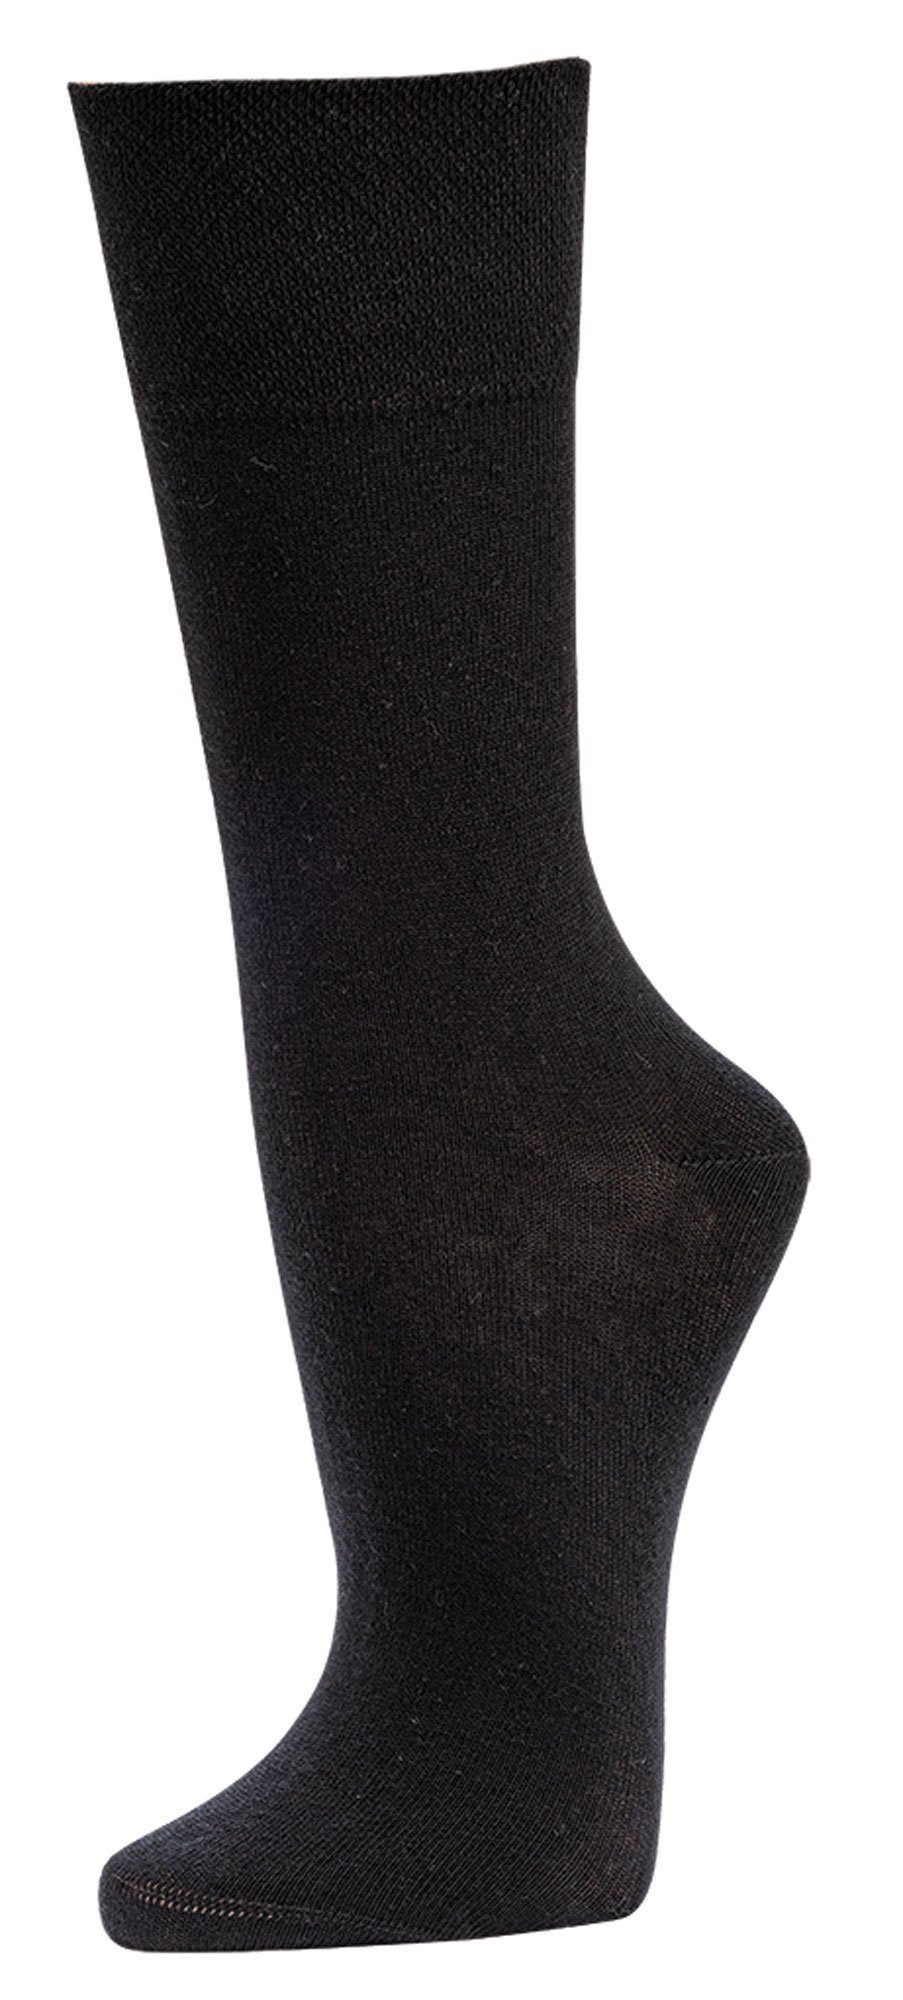 TippTexx 24 Socken 6 Paar aus Schwarz Anti-Loch-Garantie Wellness-Socken Bio-Baumwolle mit